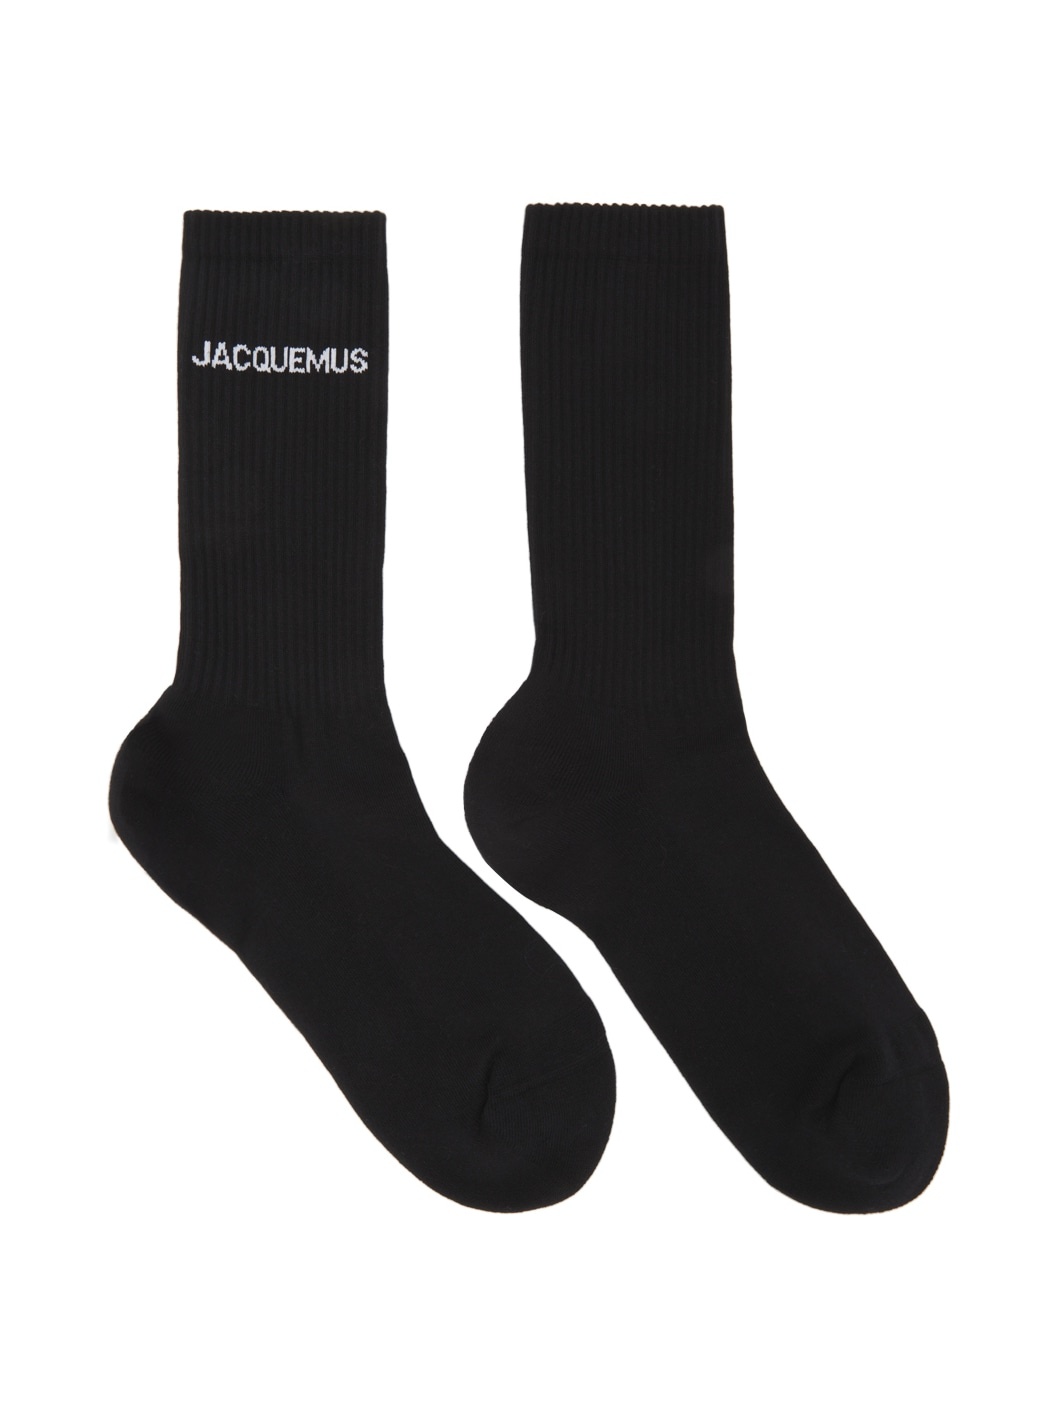 Black 'Les Chaussettes Jacquemus' Socks - 1